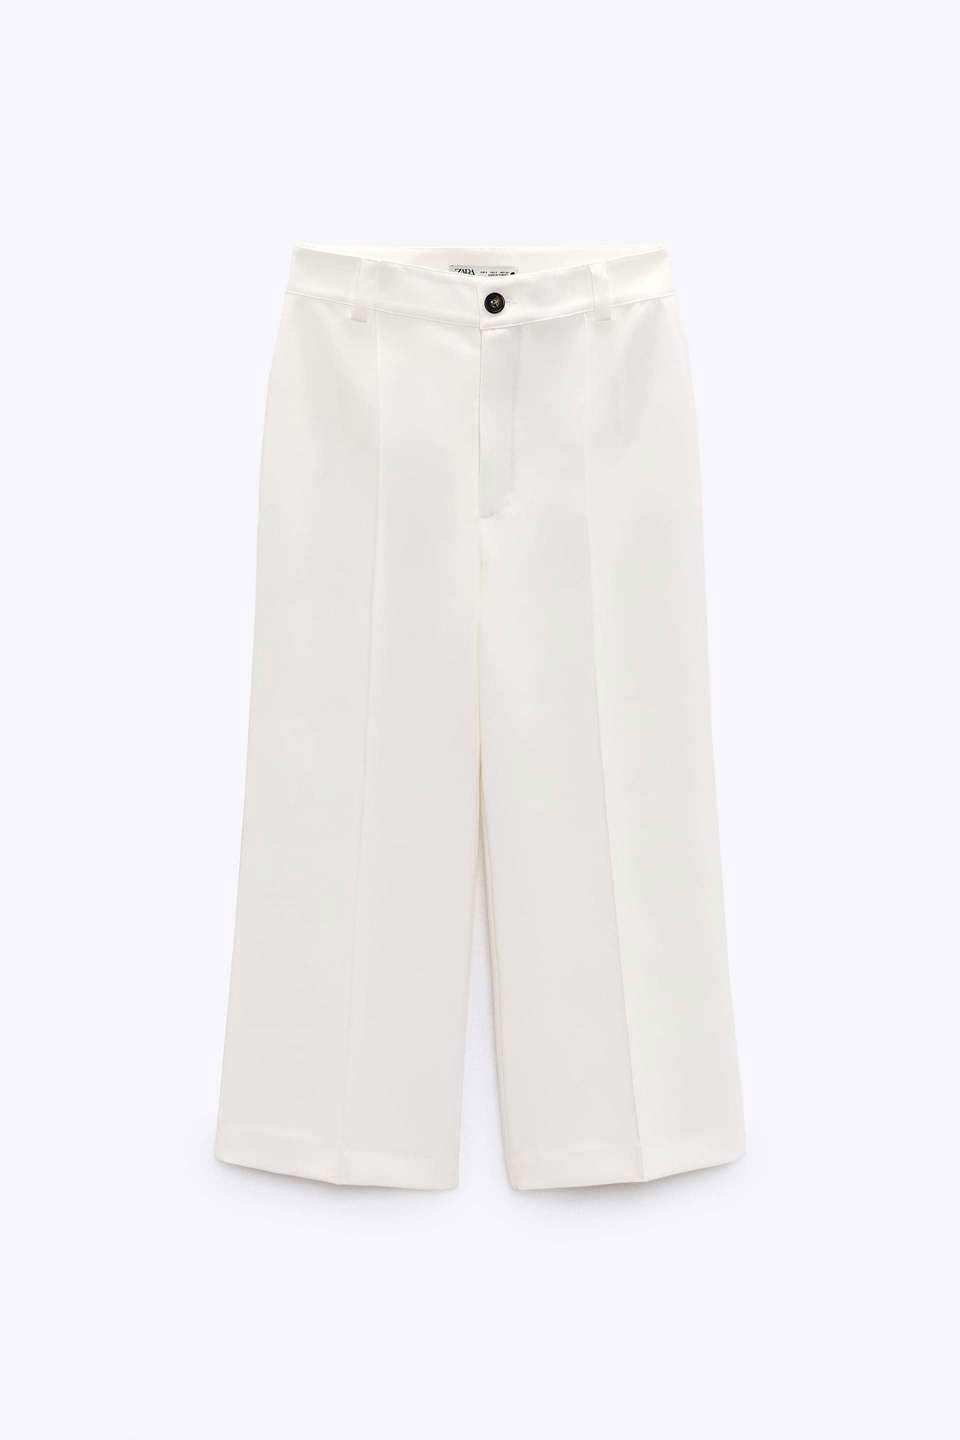 Pantalones culotte blancos de las rebajas de Zara